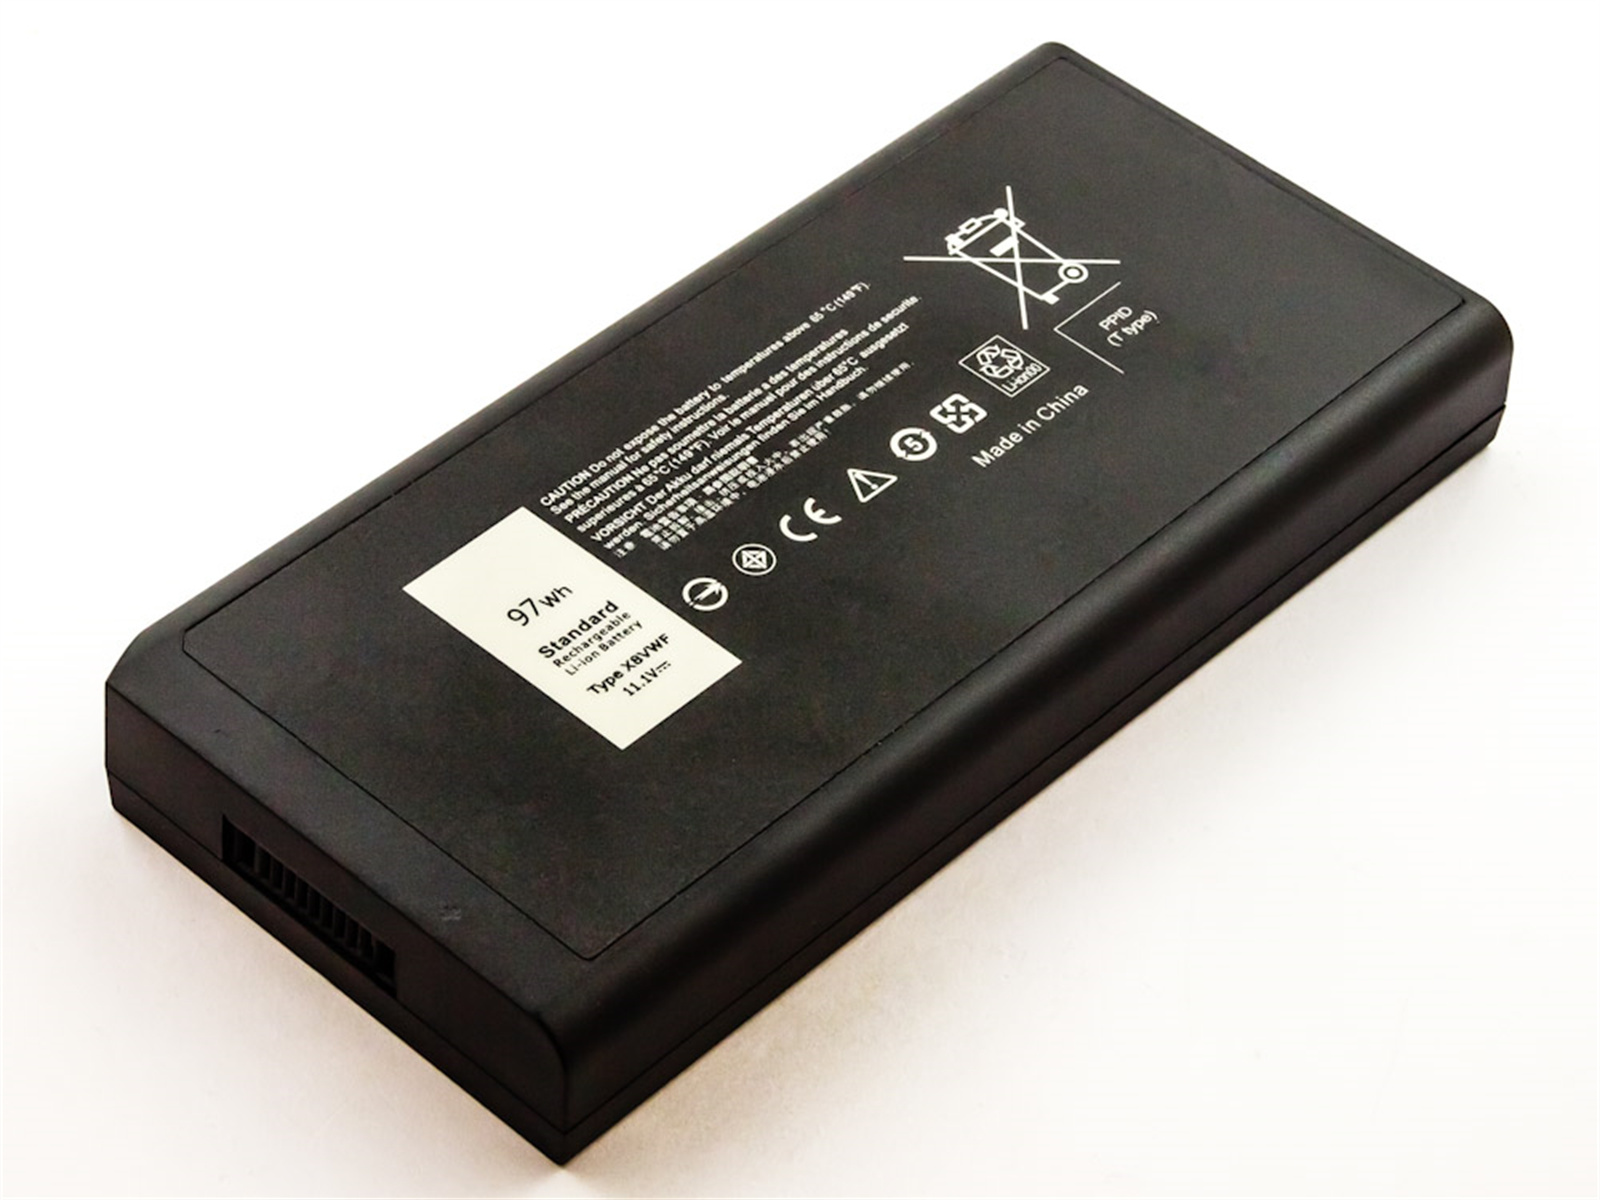 AGI Akku kompatibel mit Latitude Dell 11.1 mAh 8740 Li-Ion, Li-Ion E7404 Volt, Notebookakku